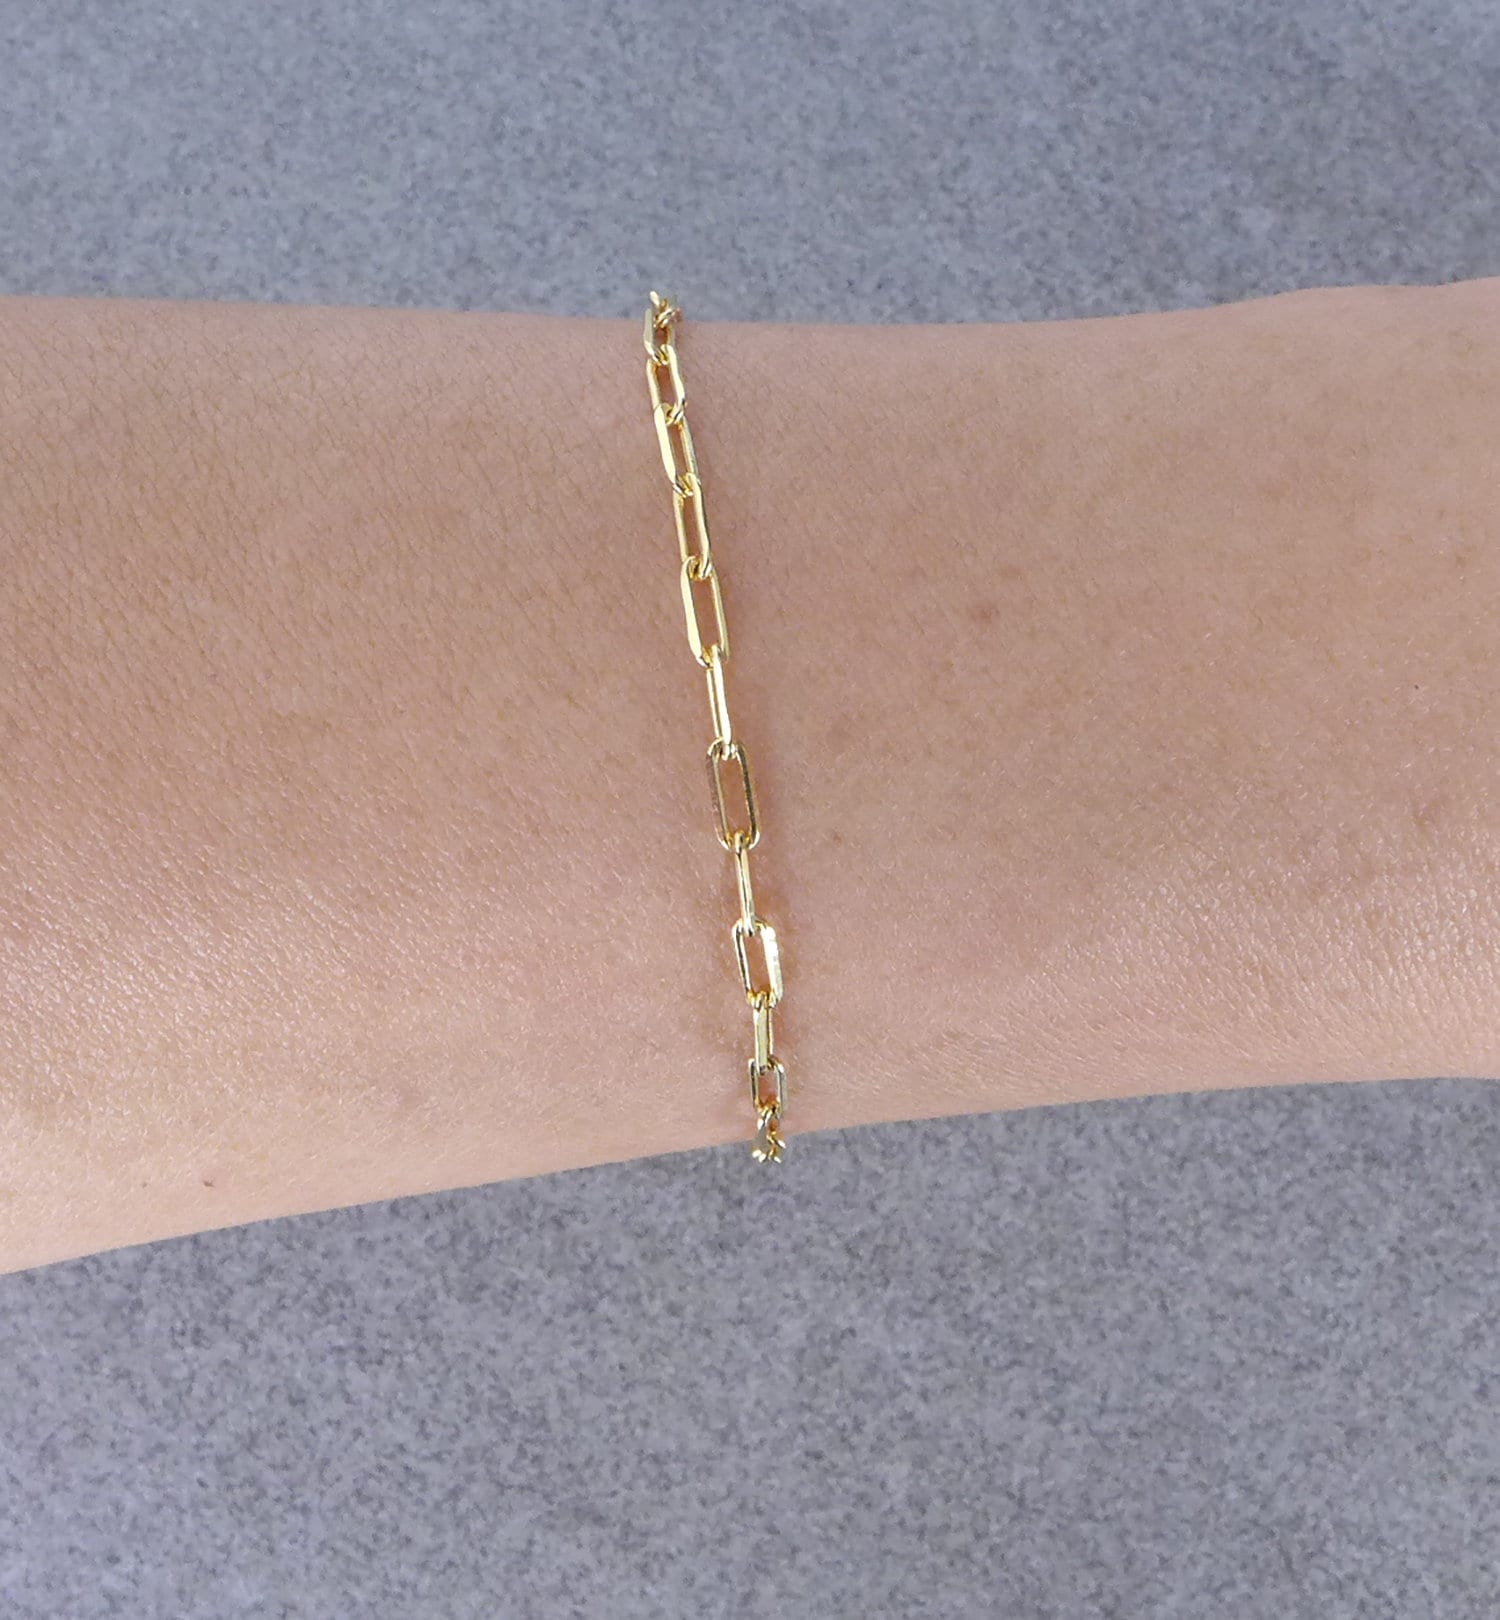 Paper Clip Link Bracelet Gold Filled Link Chain Bracelet for | Etsy